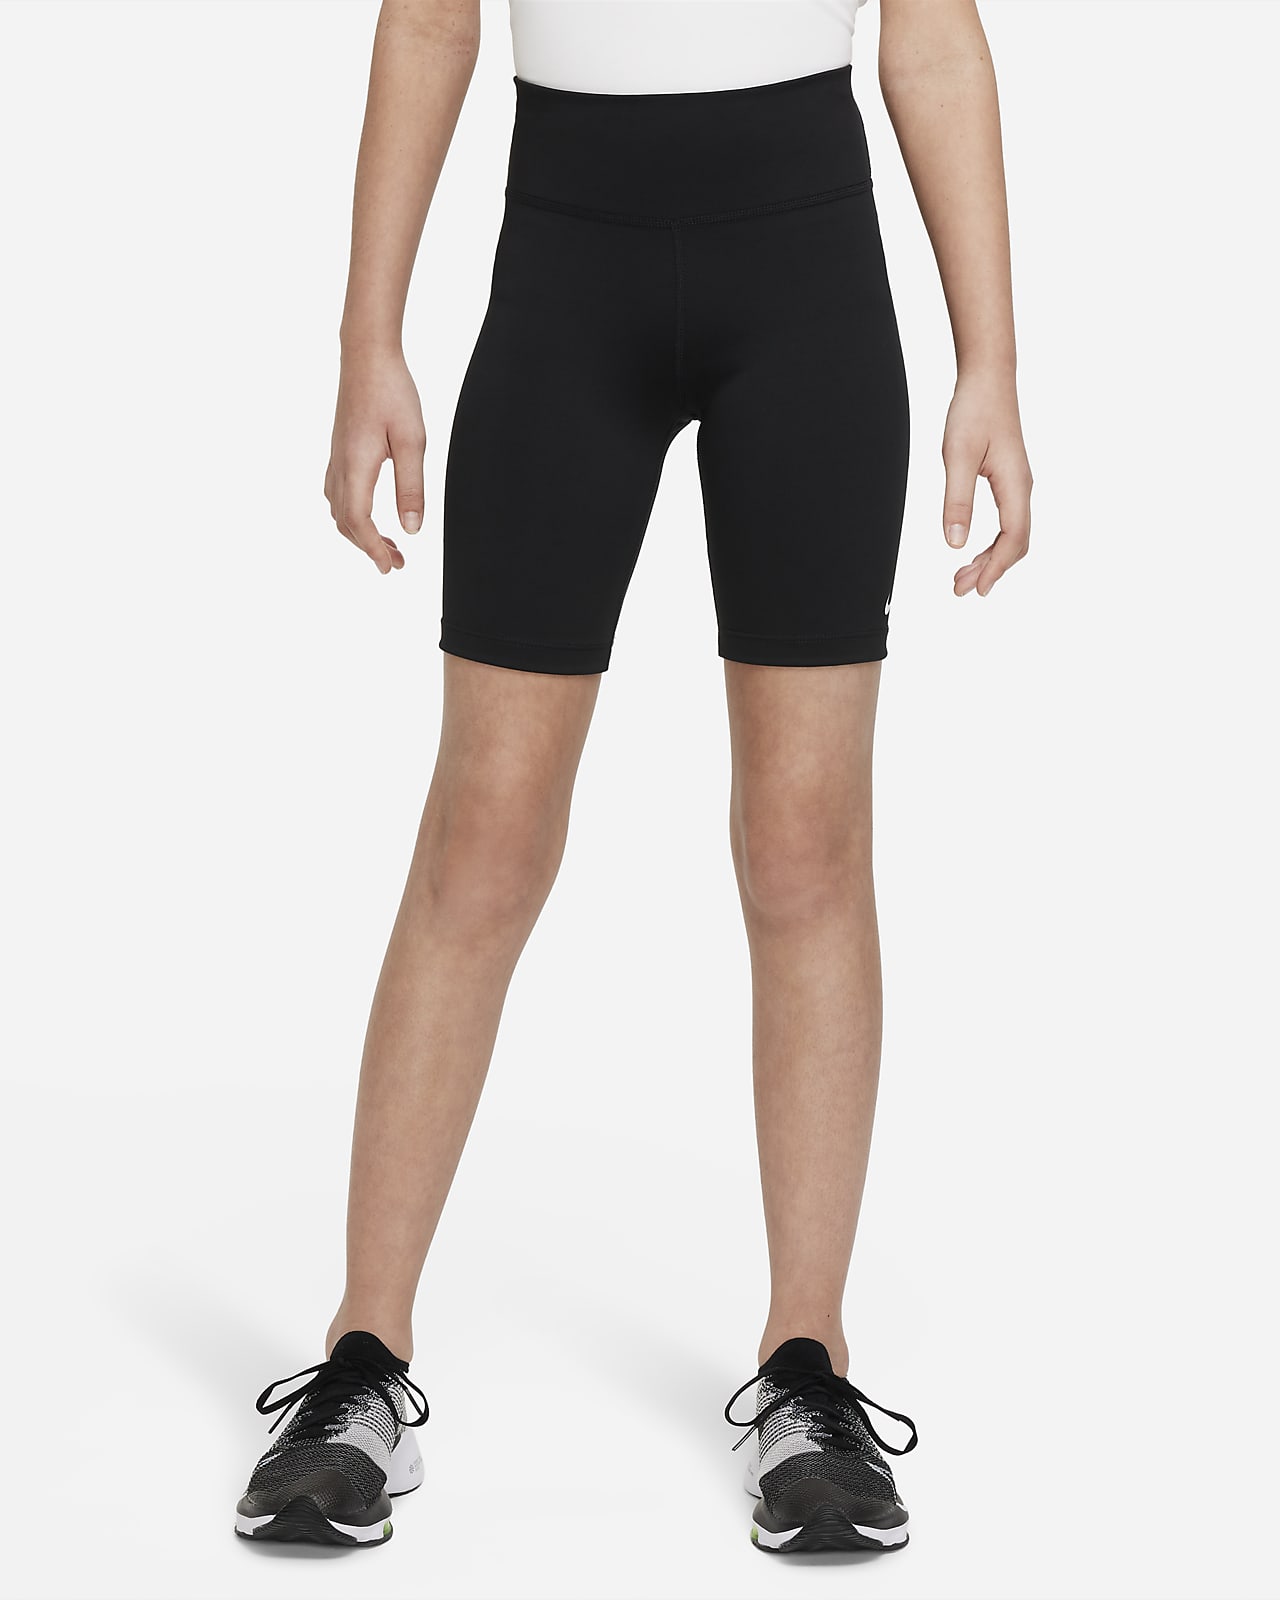 Nike One Bike Shorts mit Print für ältere Kinder (Mädchen)